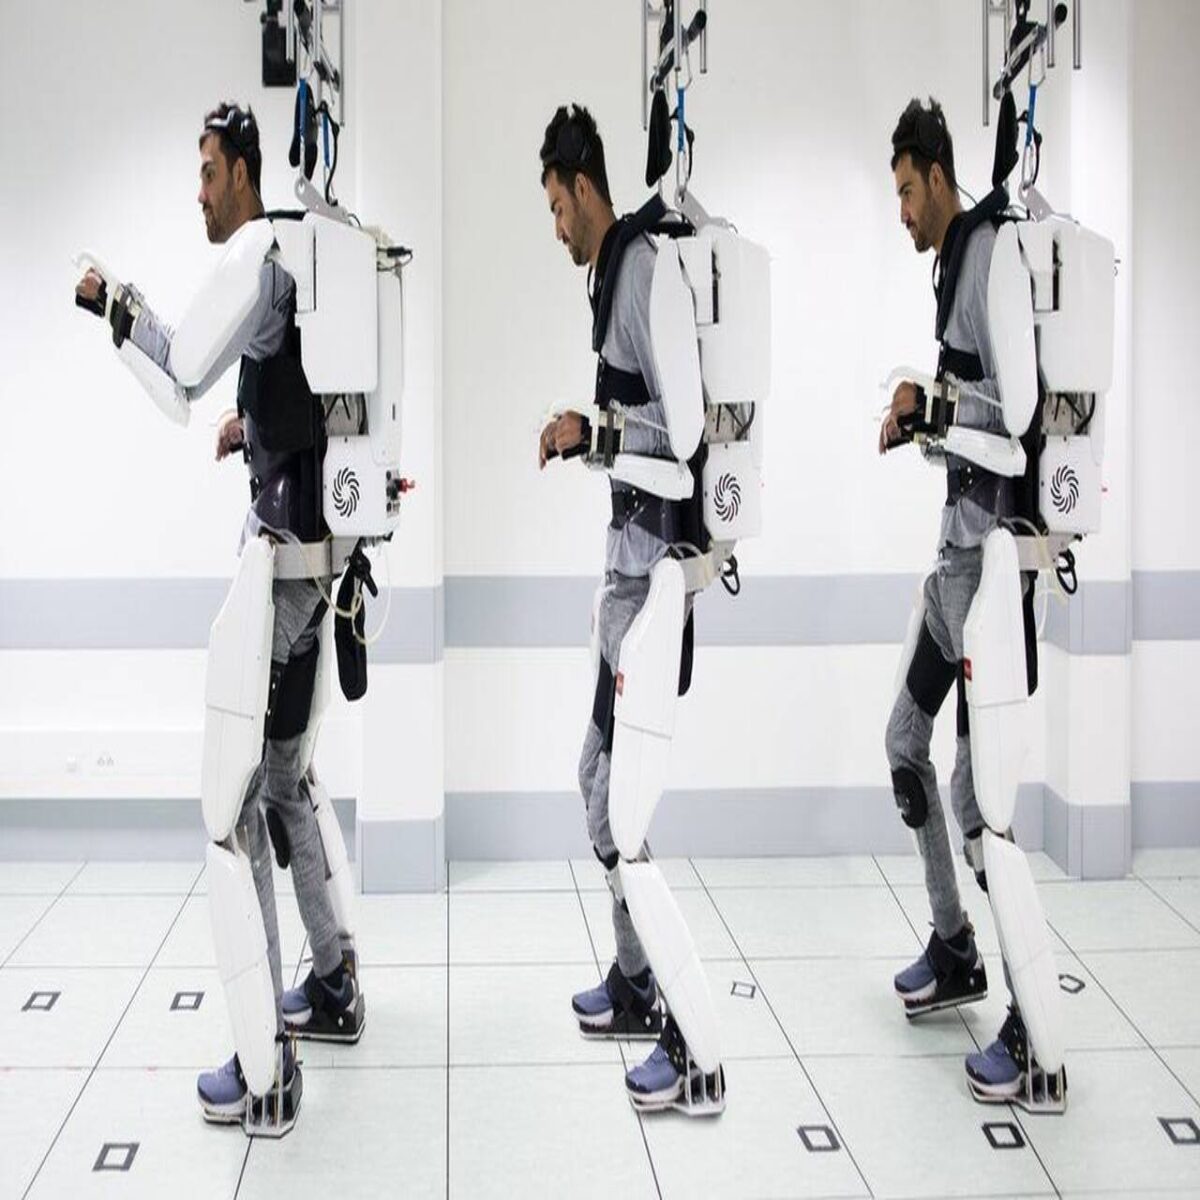 Ανακάλυψη του αιώνα για τη ρομποτική: Τετραπληγικός άντρας περπατάει με τη σκέψη του